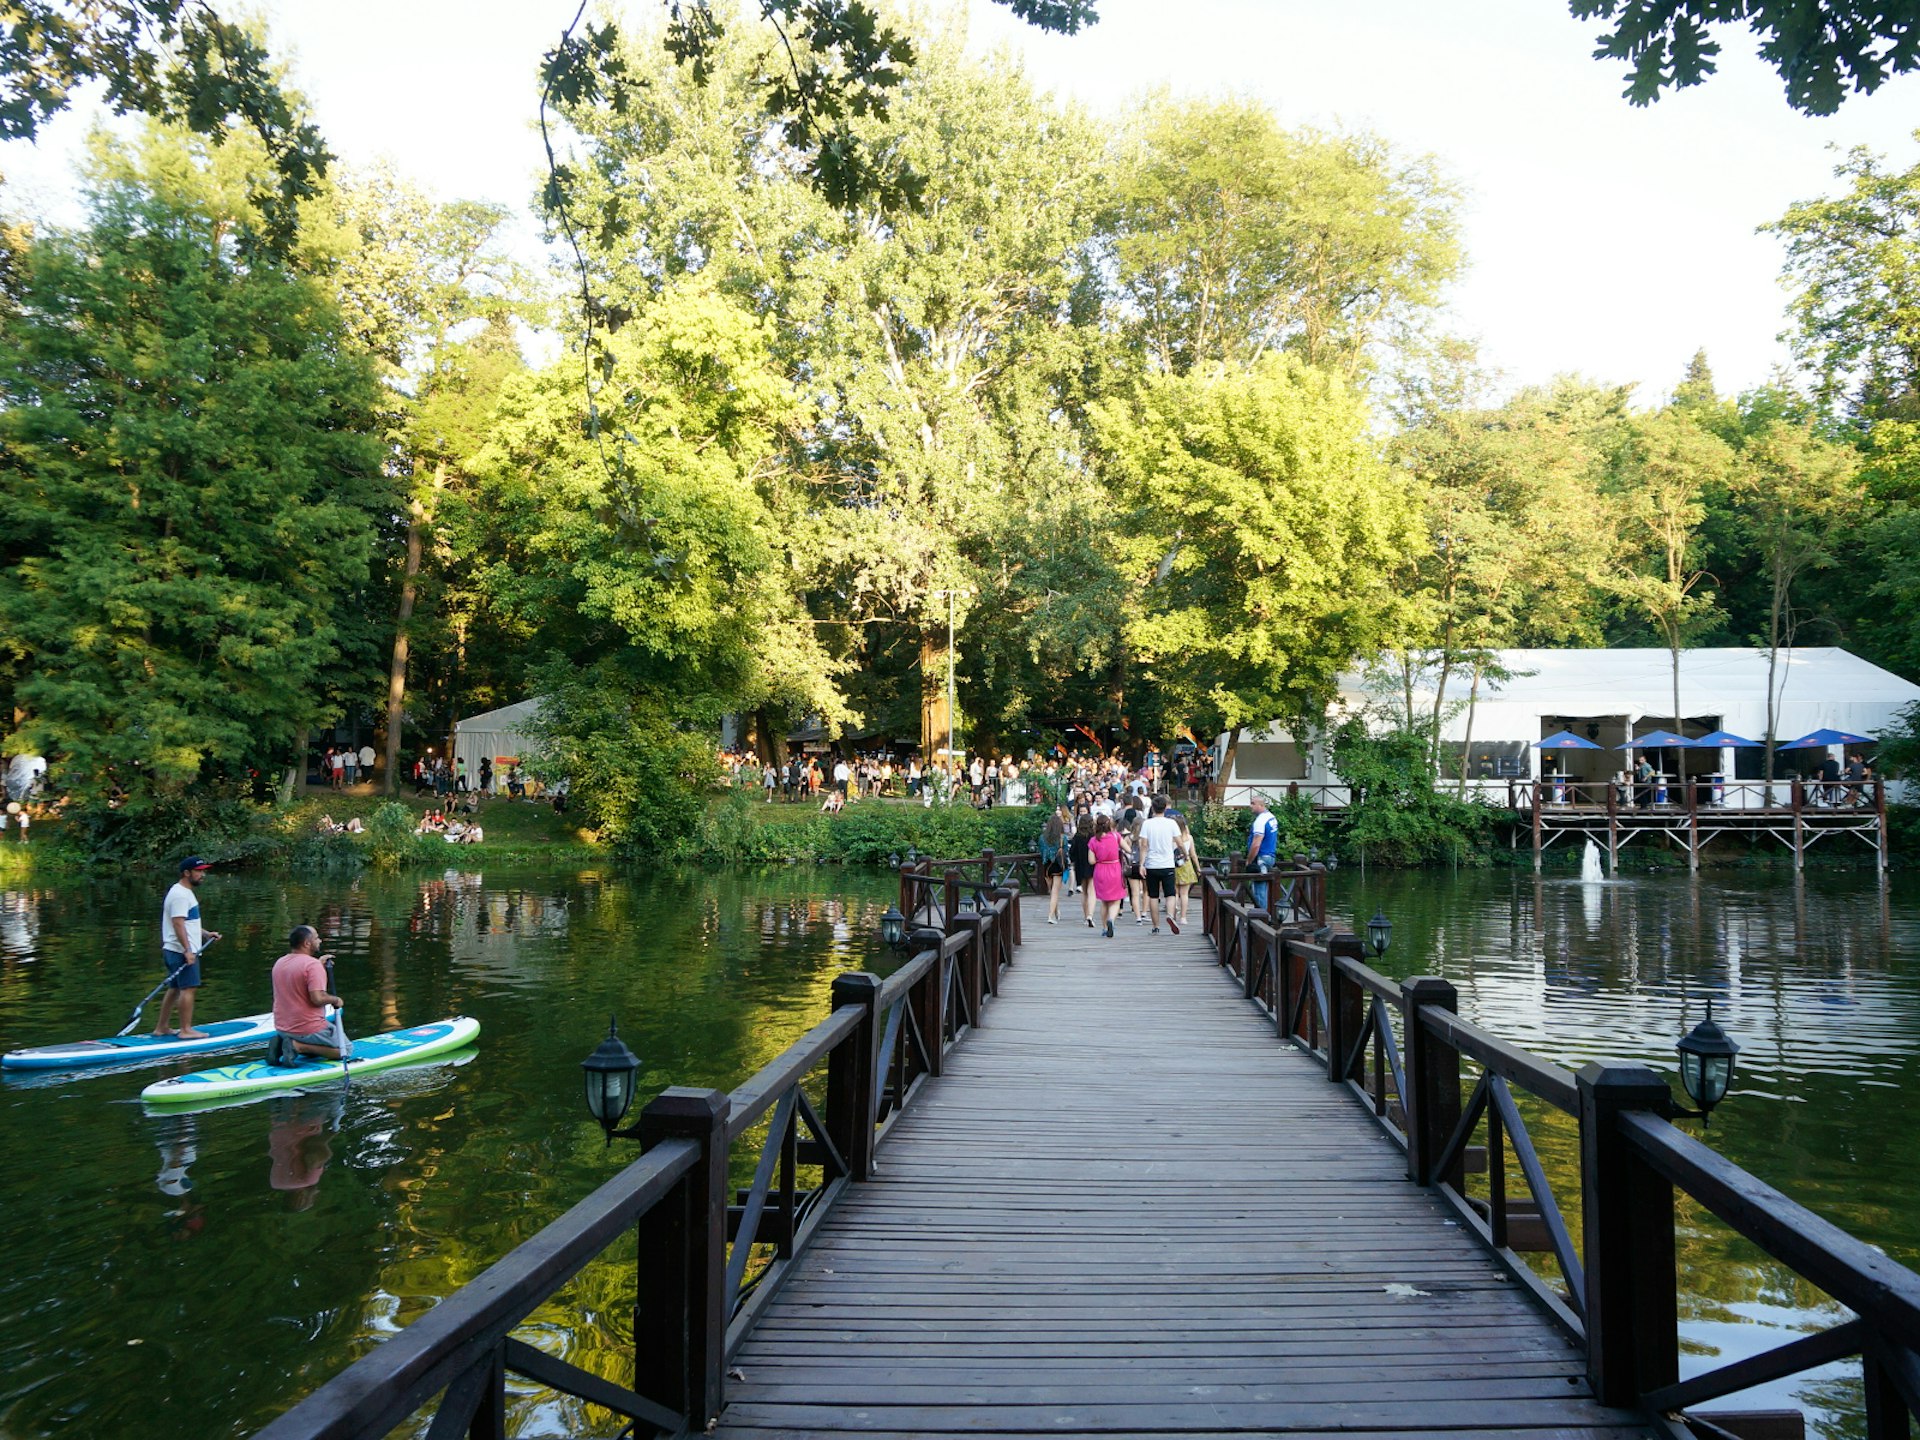 People enjoying a day out on Buftea Lake near Bucharest